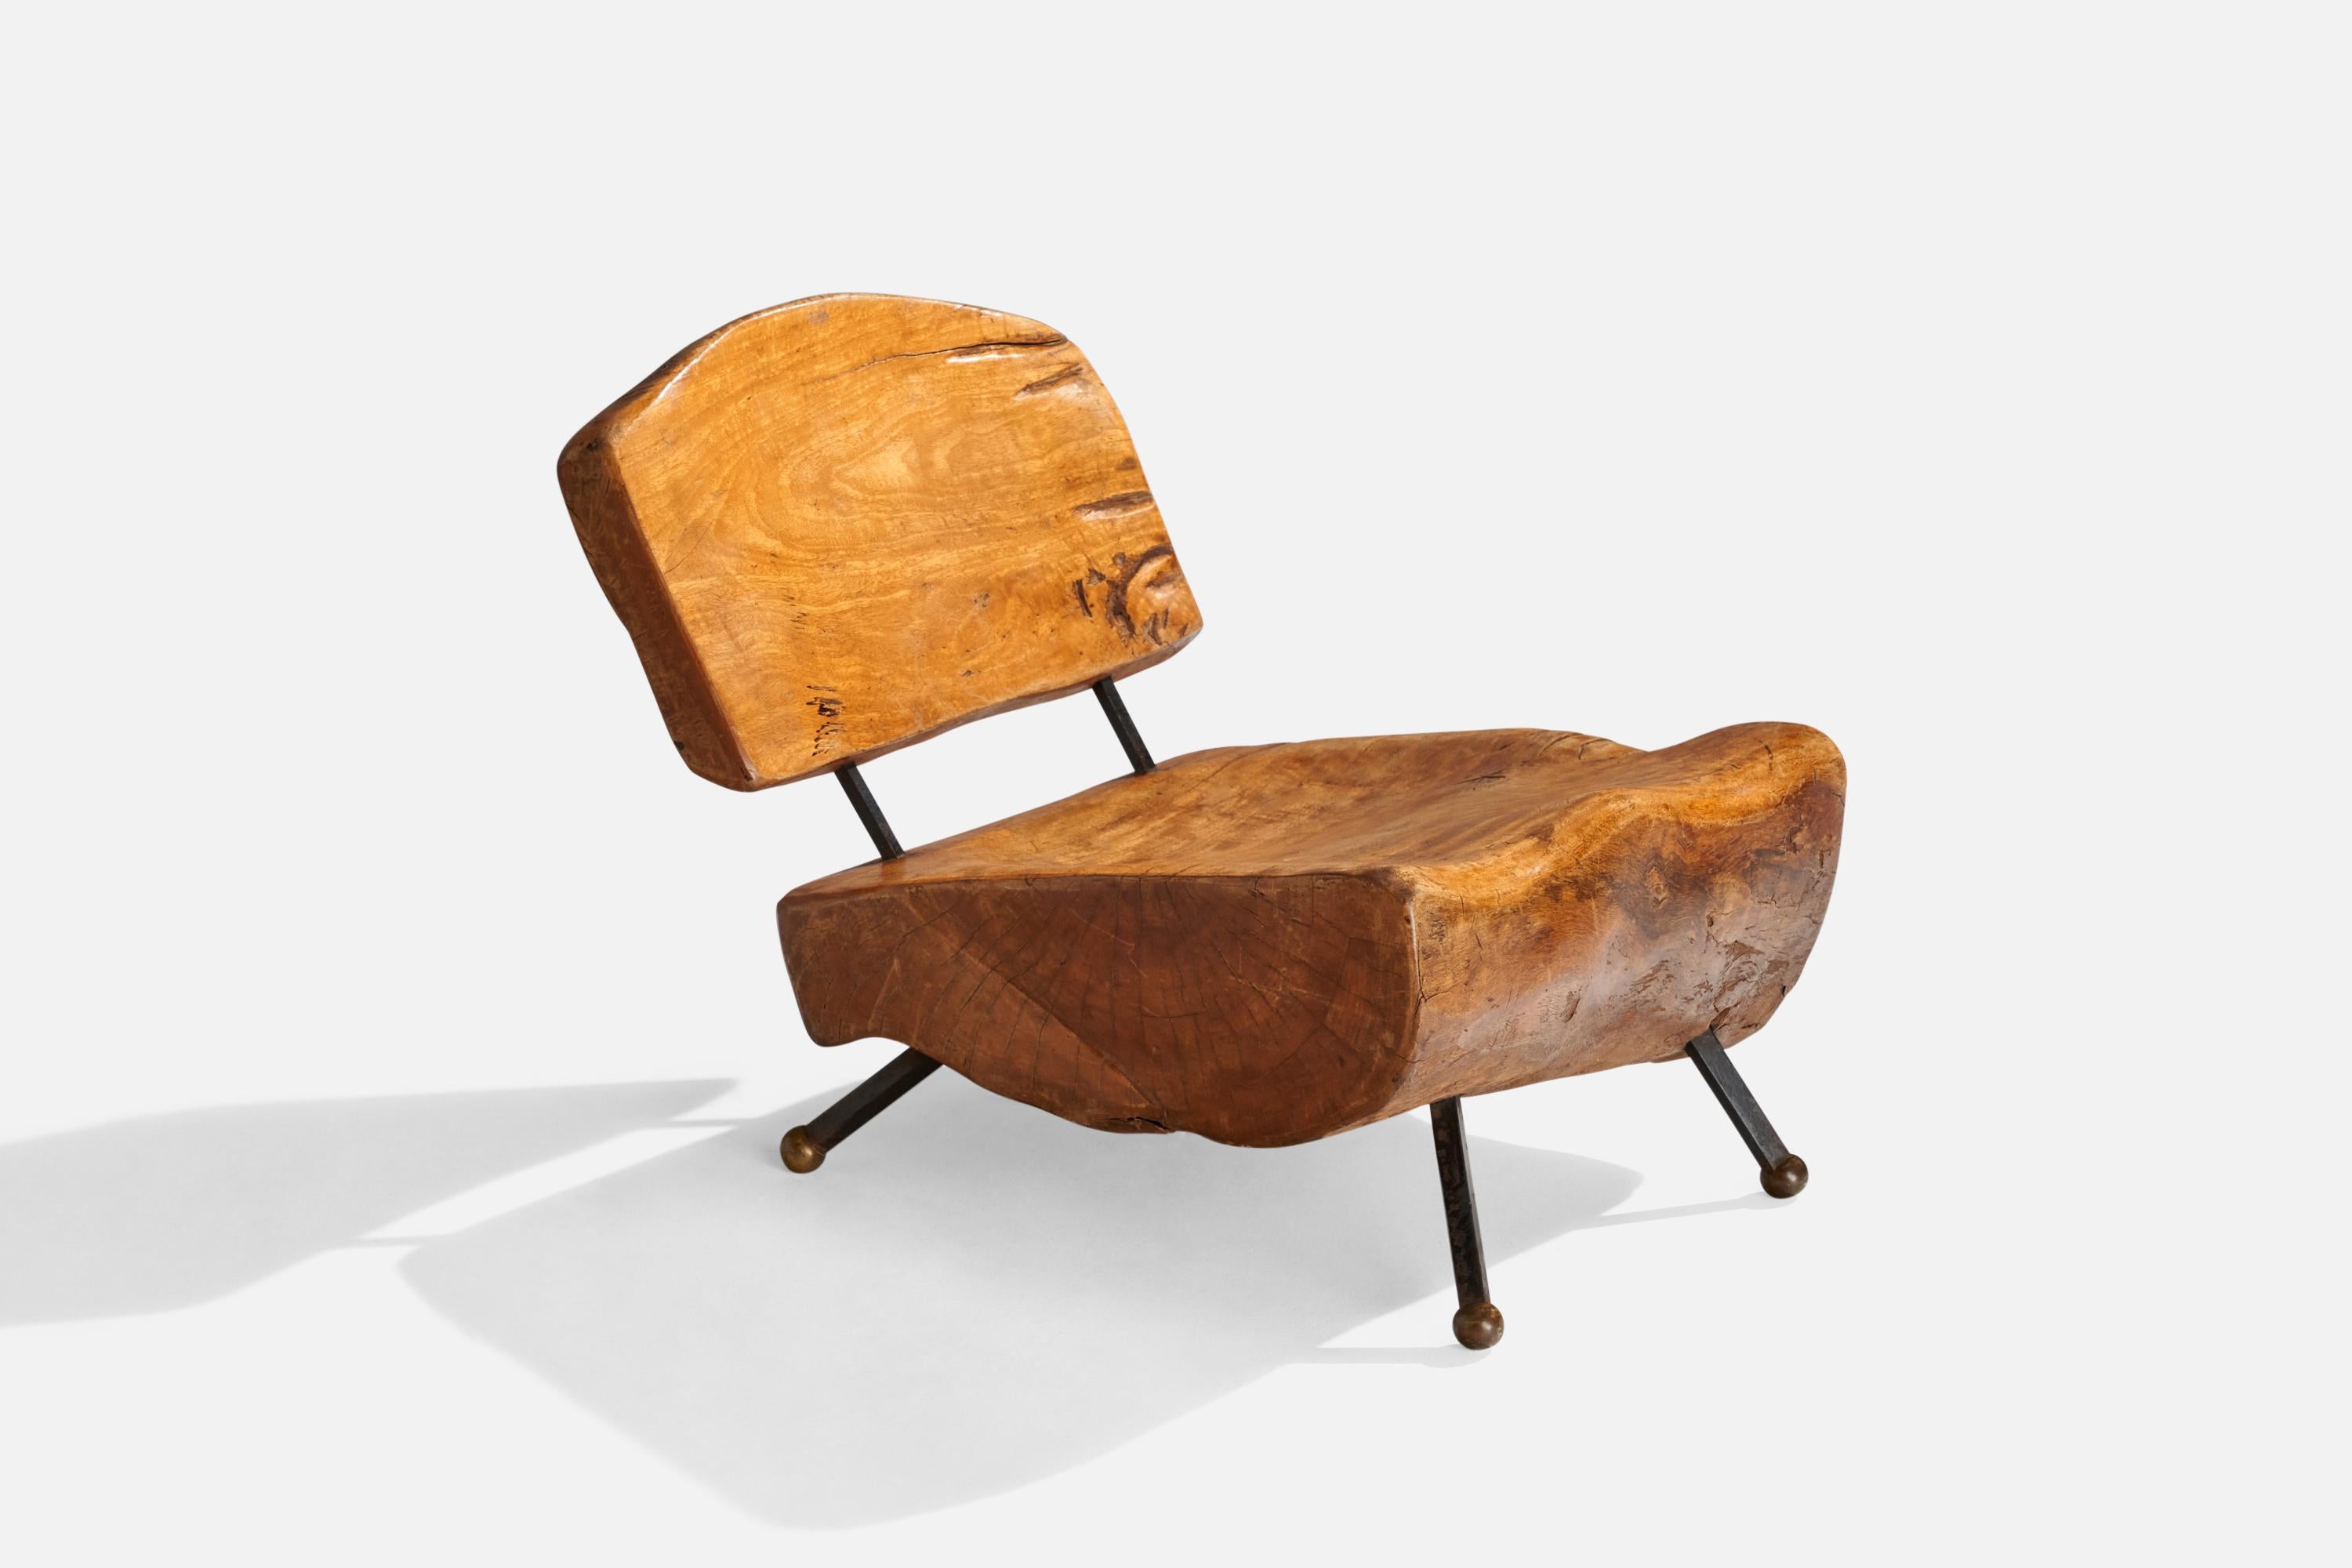 Sessel aus Nussbaumholz, schwarz lackiertem Eisen und Messing, hergestellt von Sabena, Mexiko, 1950er Jahre.

Sitzhöhe: 13.25